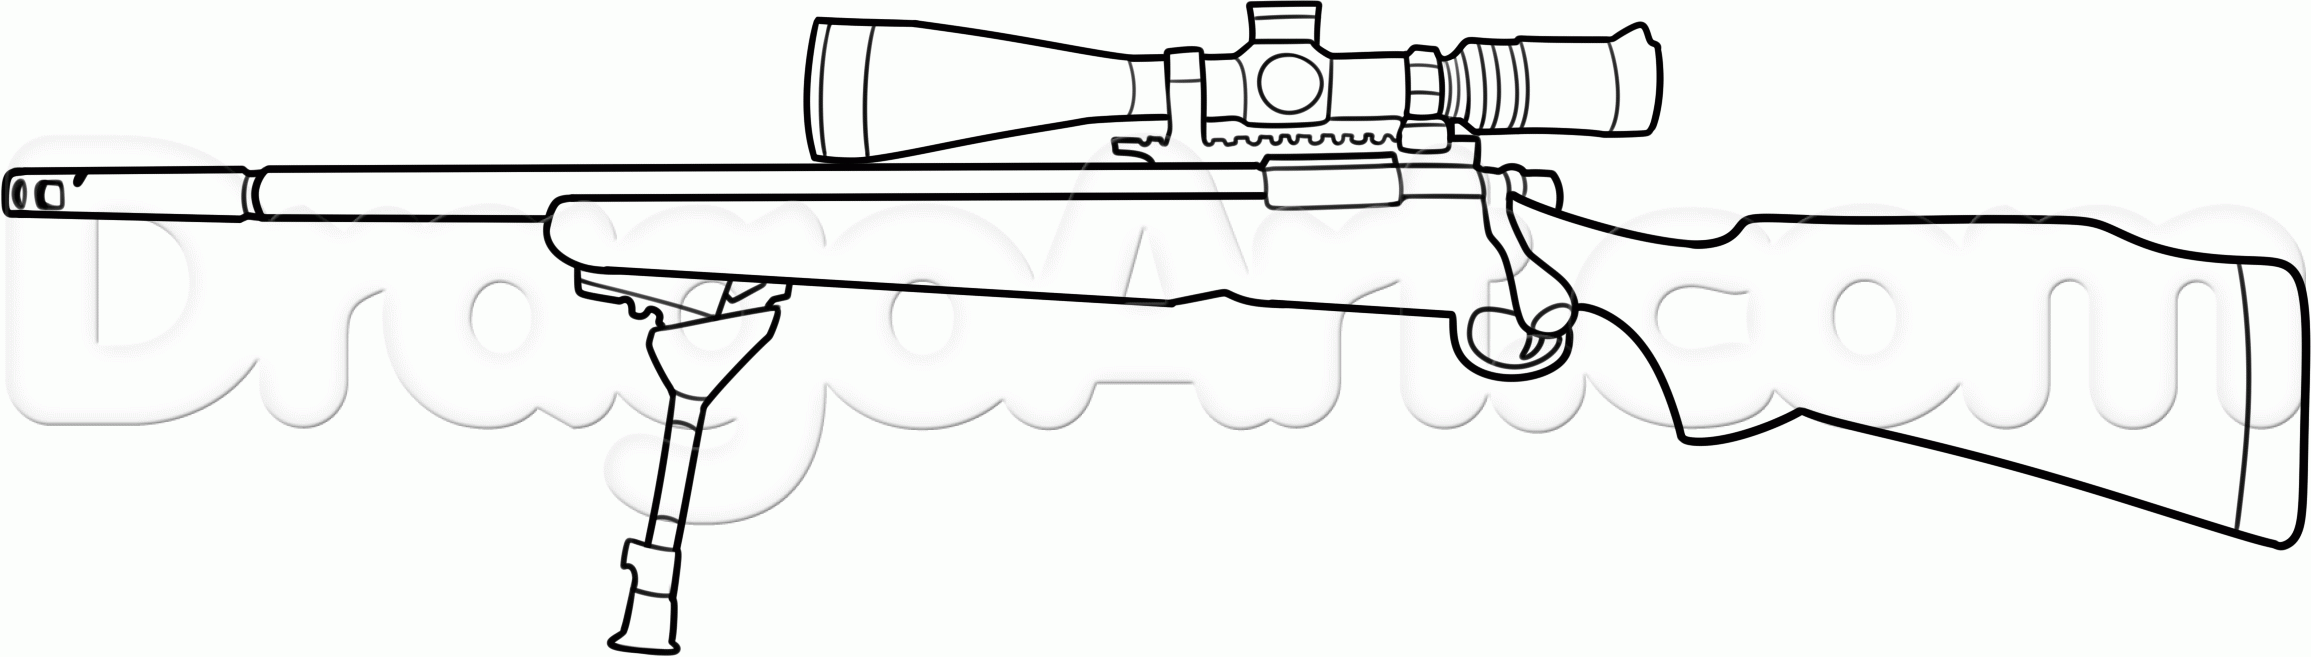 Рисунок снайперской винтовки м24